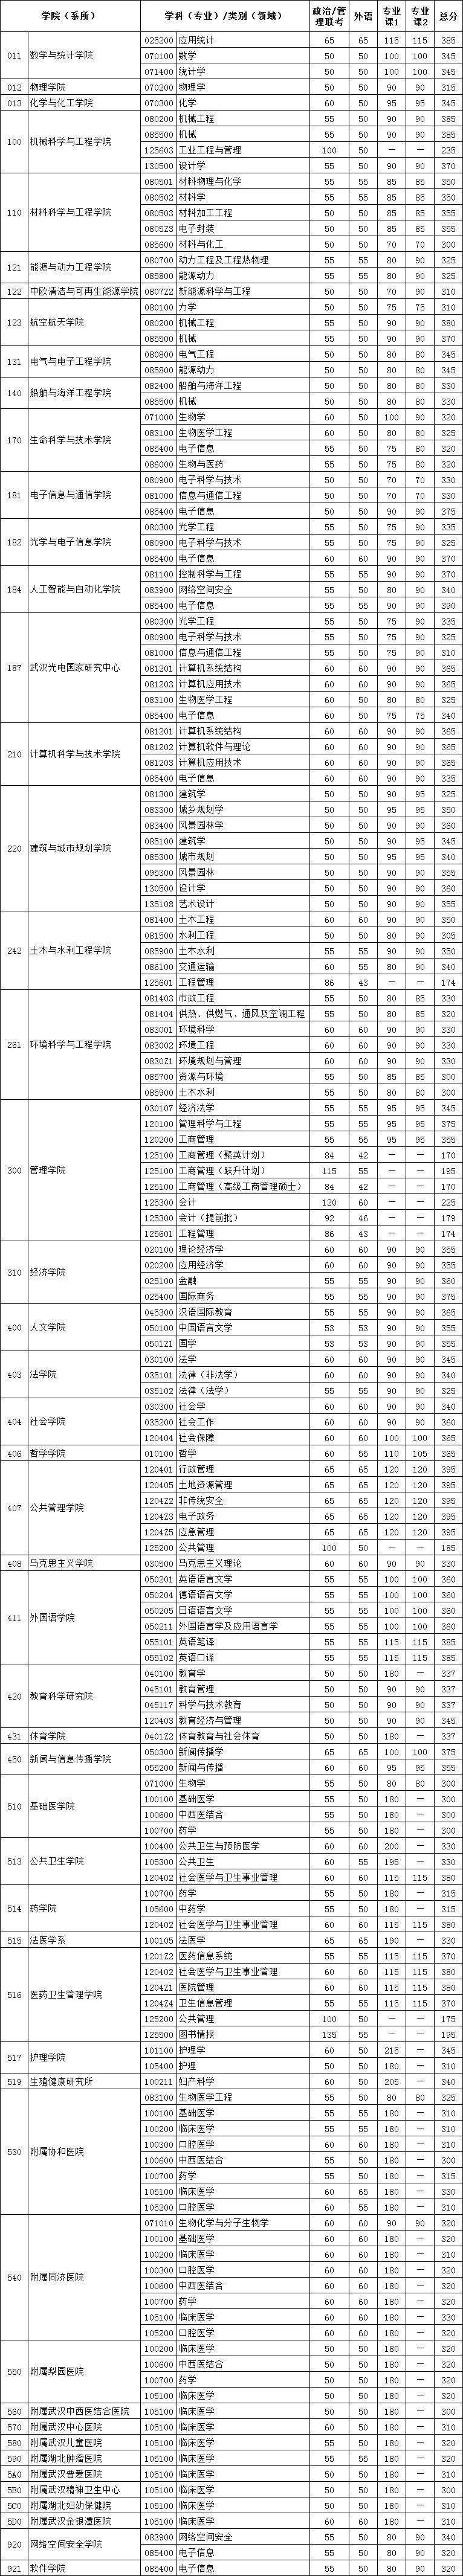 华中科技大学2021考研复试分数线公布